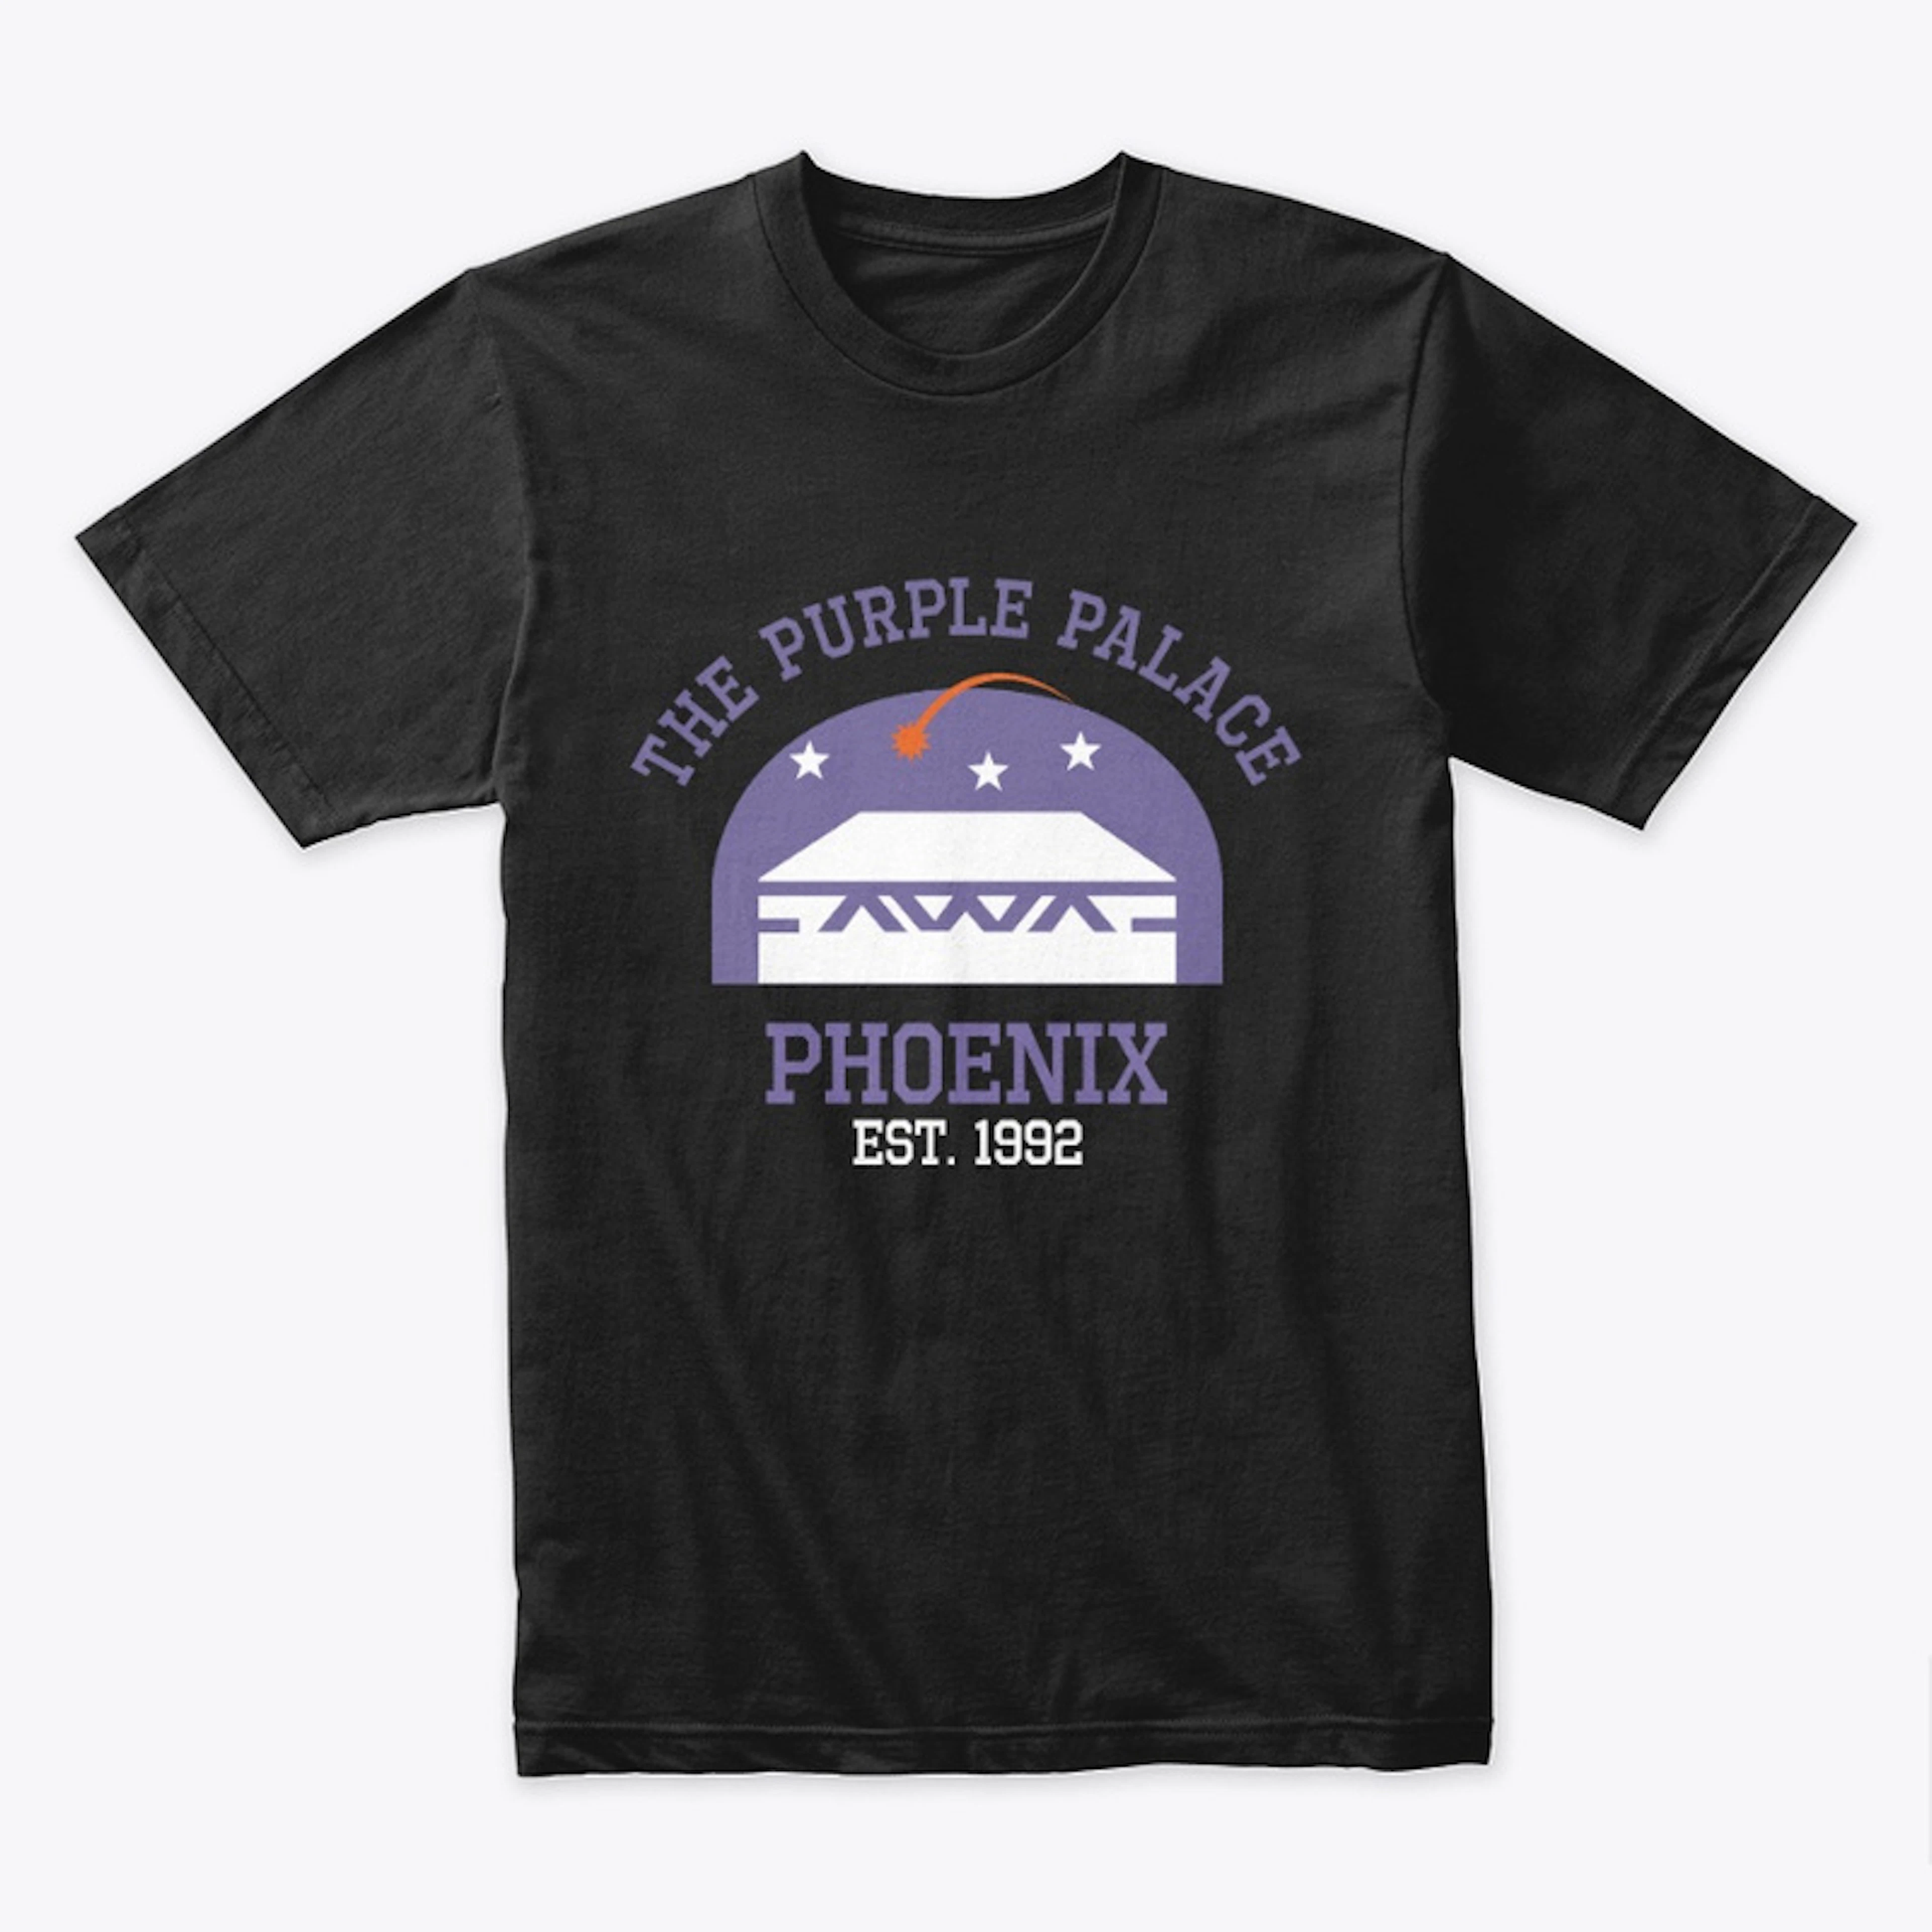 Purple Palace PHX Fans shirt